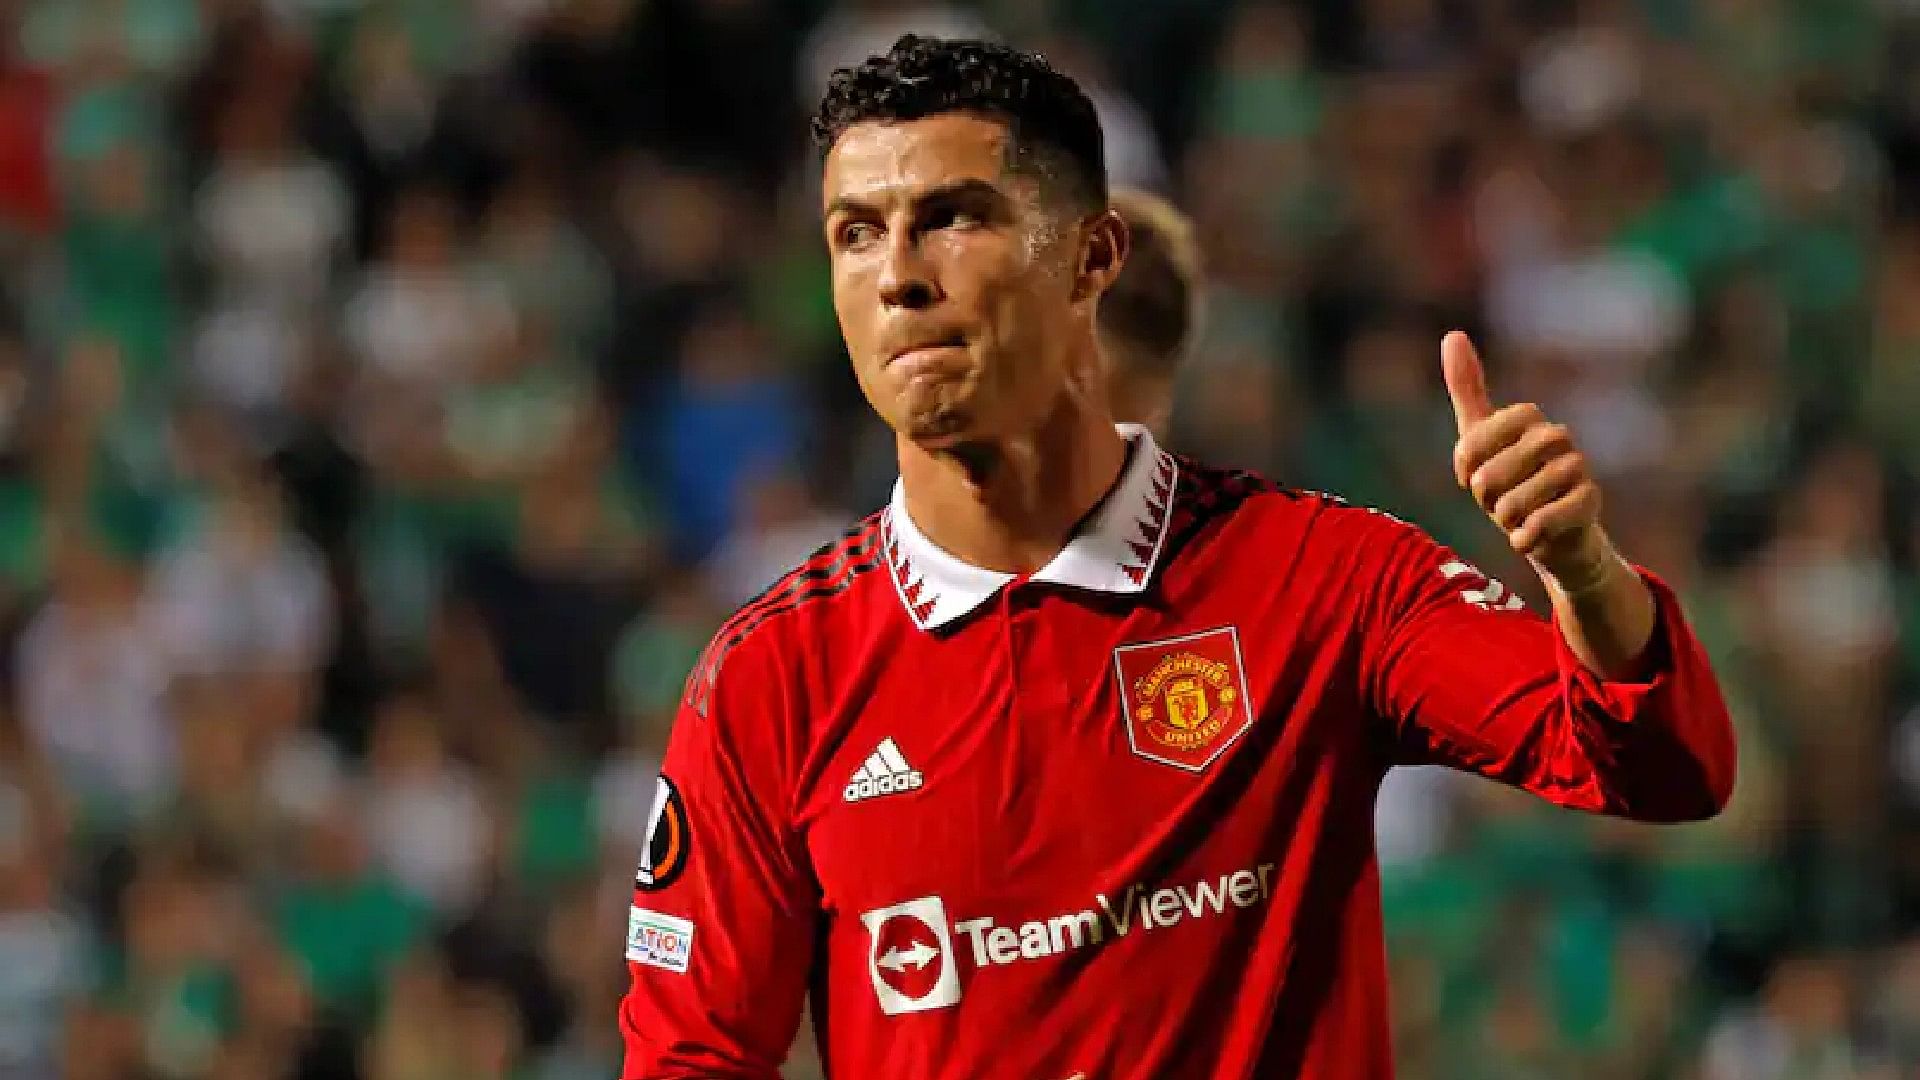 Cristiano Ronaldo:सऊदी के फुटबॉल क्लब के साथ जुड़ने की खबर पर रोनाल्डो ने तोड़ी चुप्पी, दिया यह बड़ा बयान - Cristiano Ronaldo Breaks Silence On Saudi Arabia Club Transfer Rumours ...